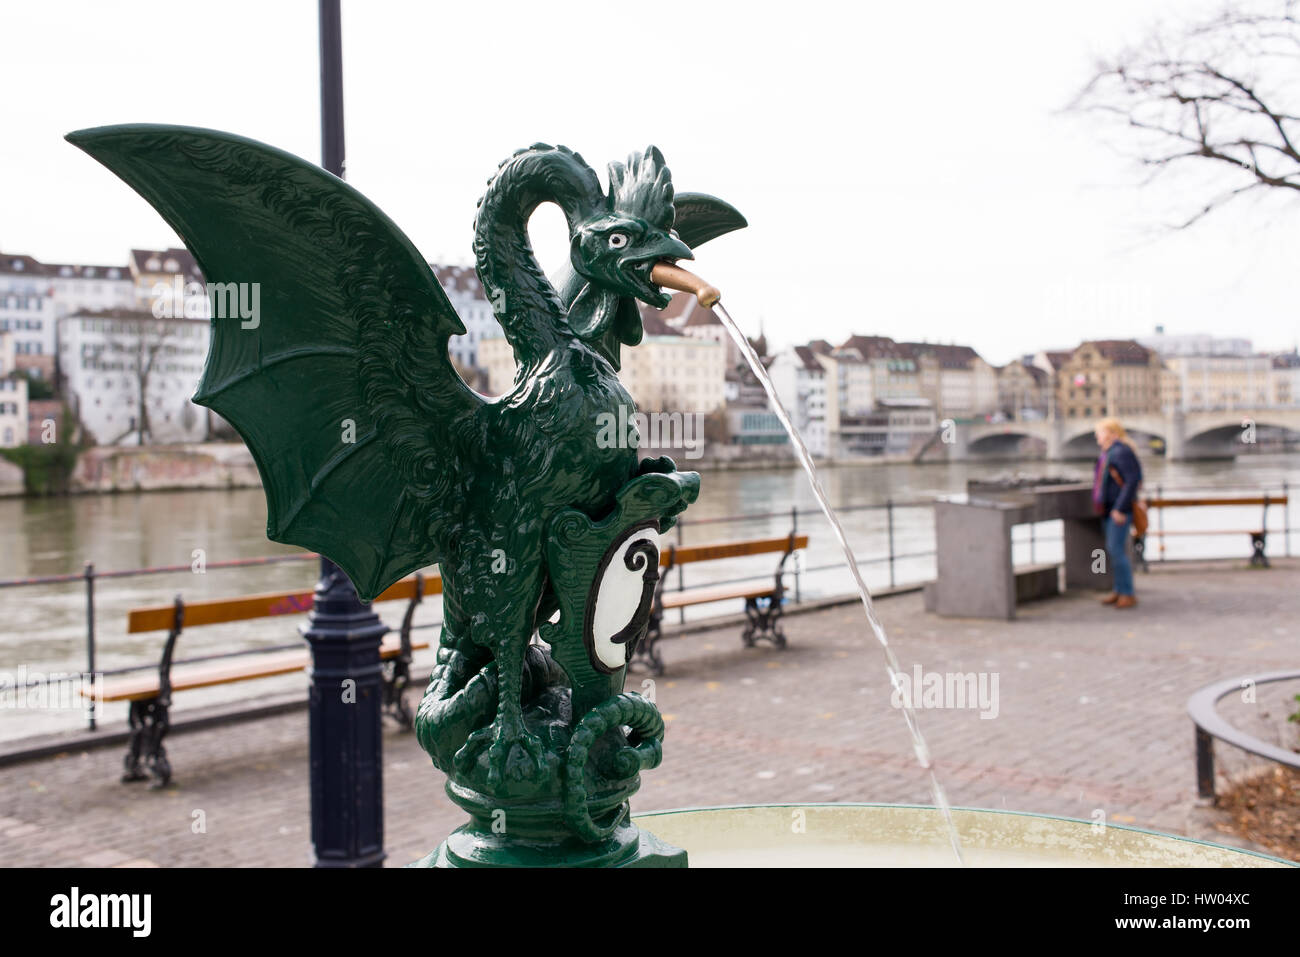 Dragon fontaine sur la rivière de Bâle/avec les gens, du Rhin et de la vieille ville en arrière-plan. La vieille ville de Bâle, le grand-Bâle, Suisse. Altstadt Banque D'Images